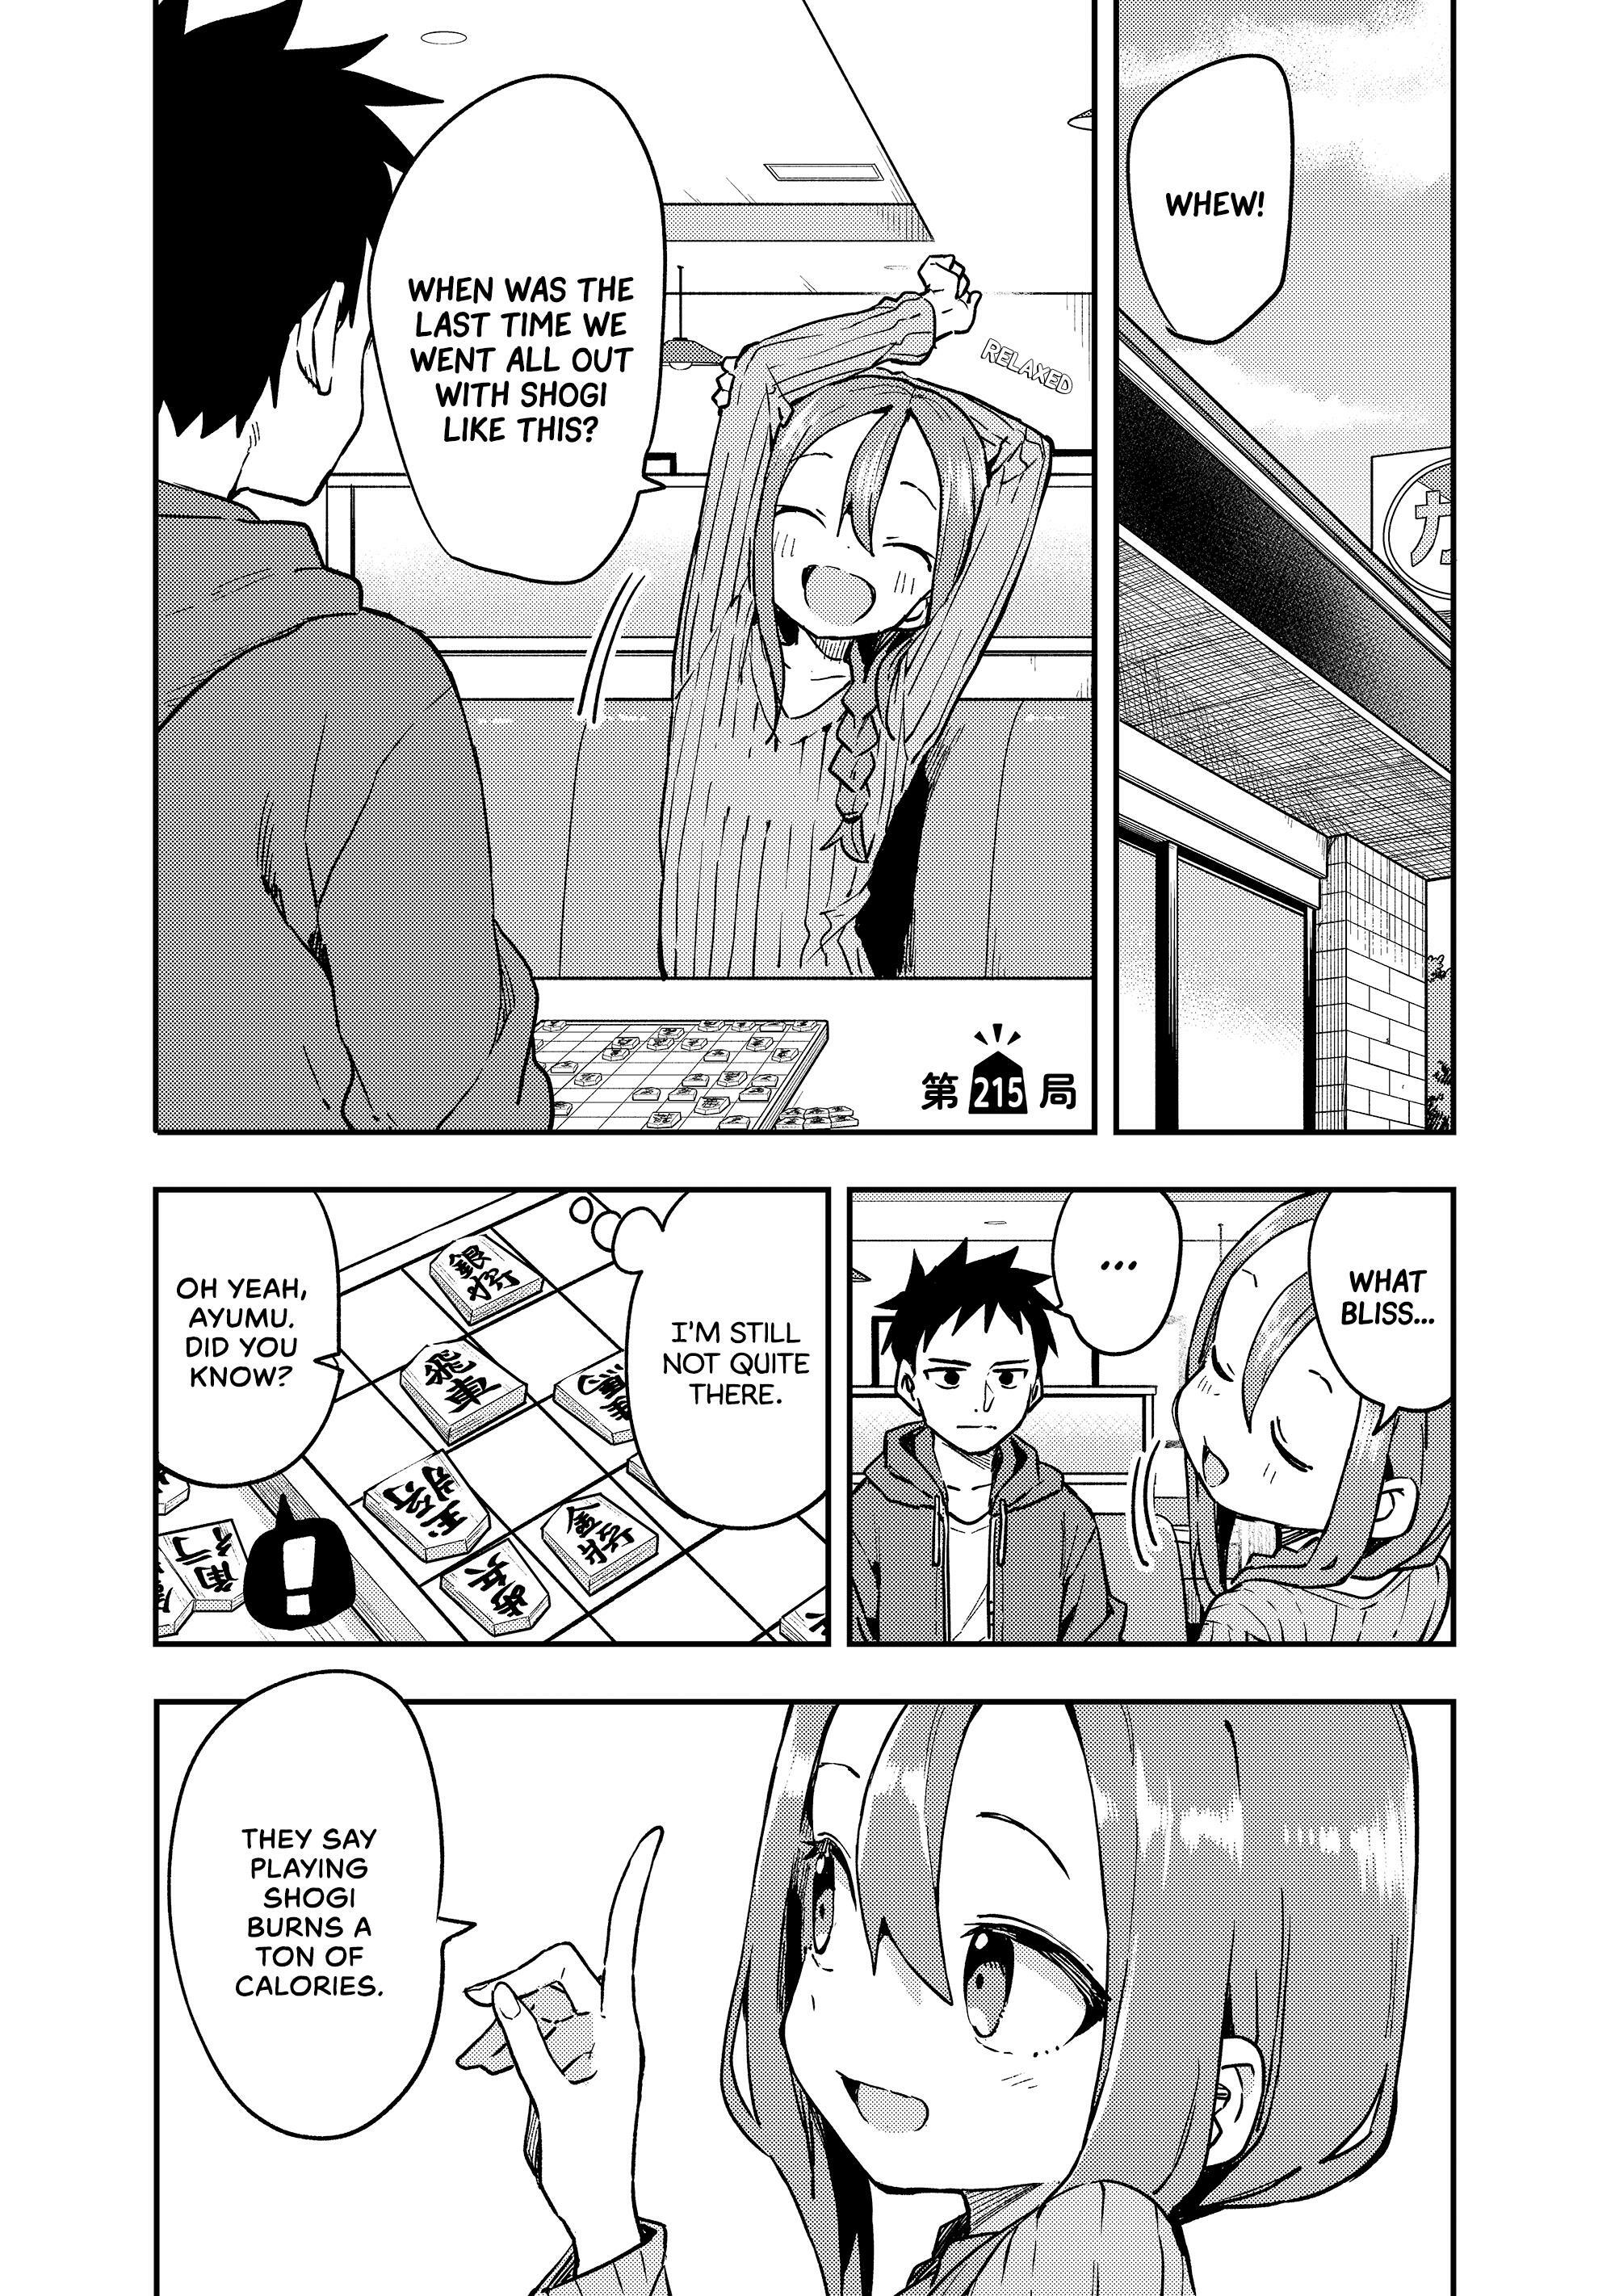 When Will Ayumu Make His Move? Manga Volume 3